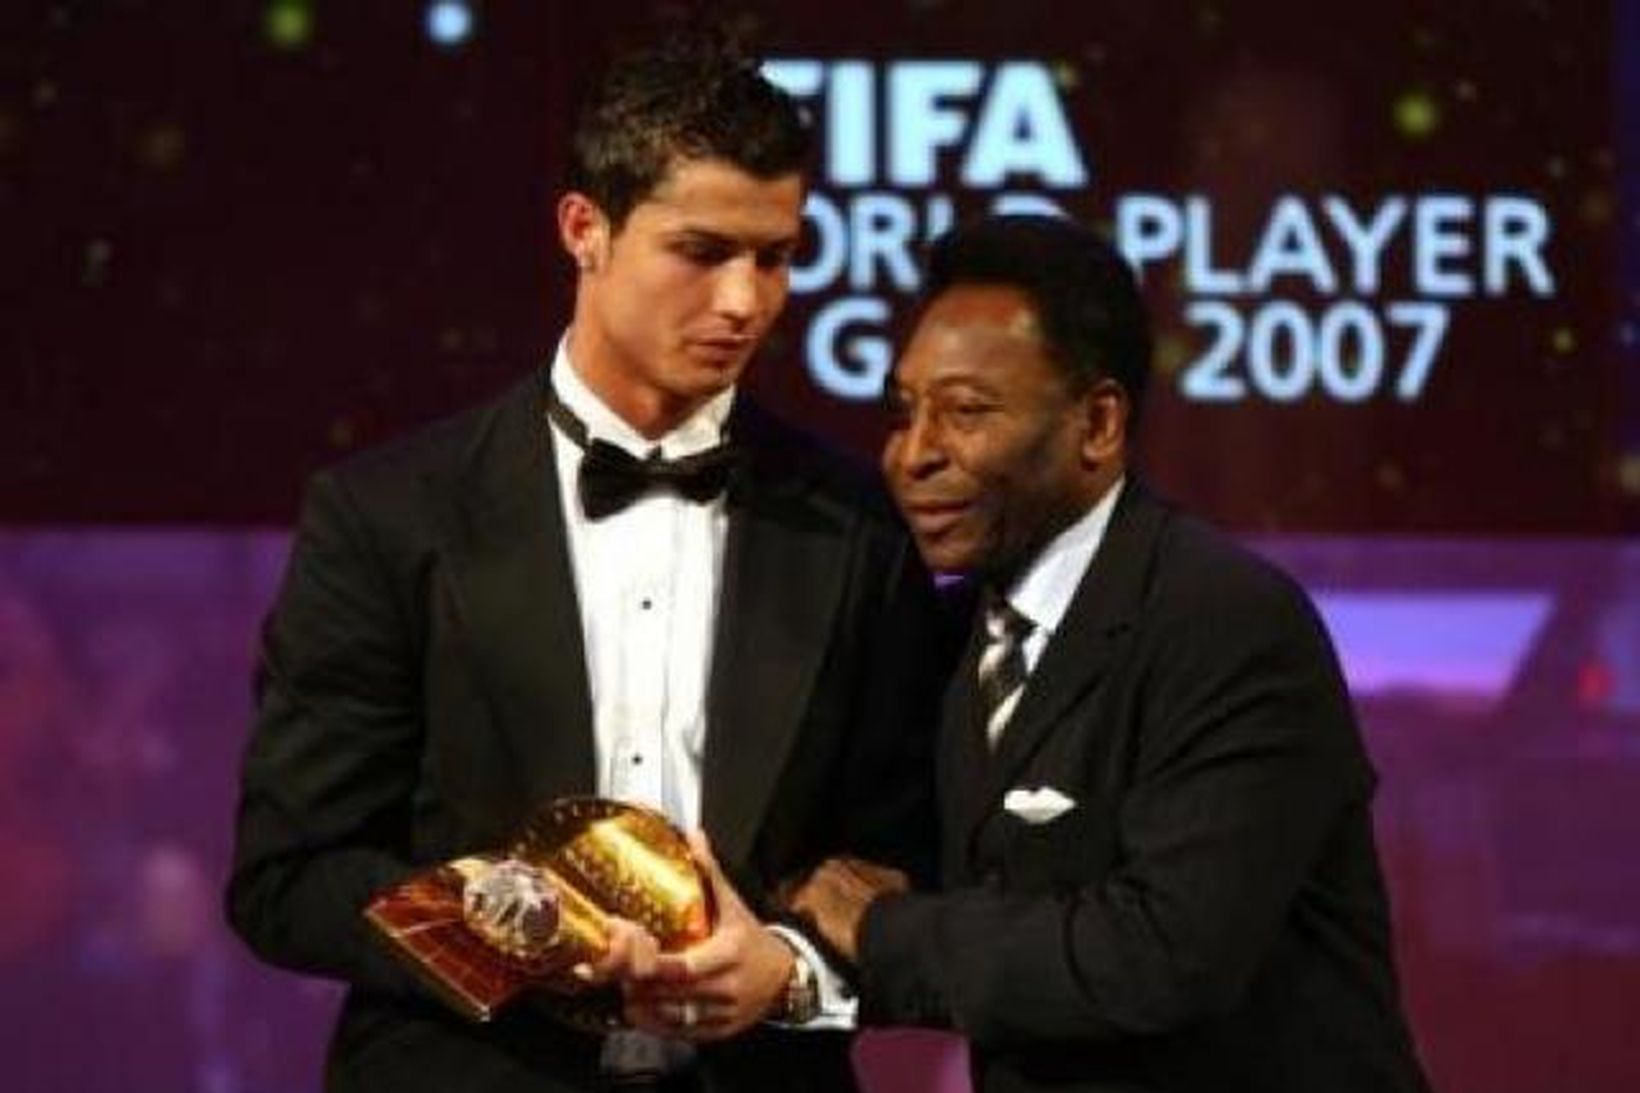 Pele ásamt Cristiano Ronaldo við verðlaunaafhendingu hjá FIFA á síðasta …